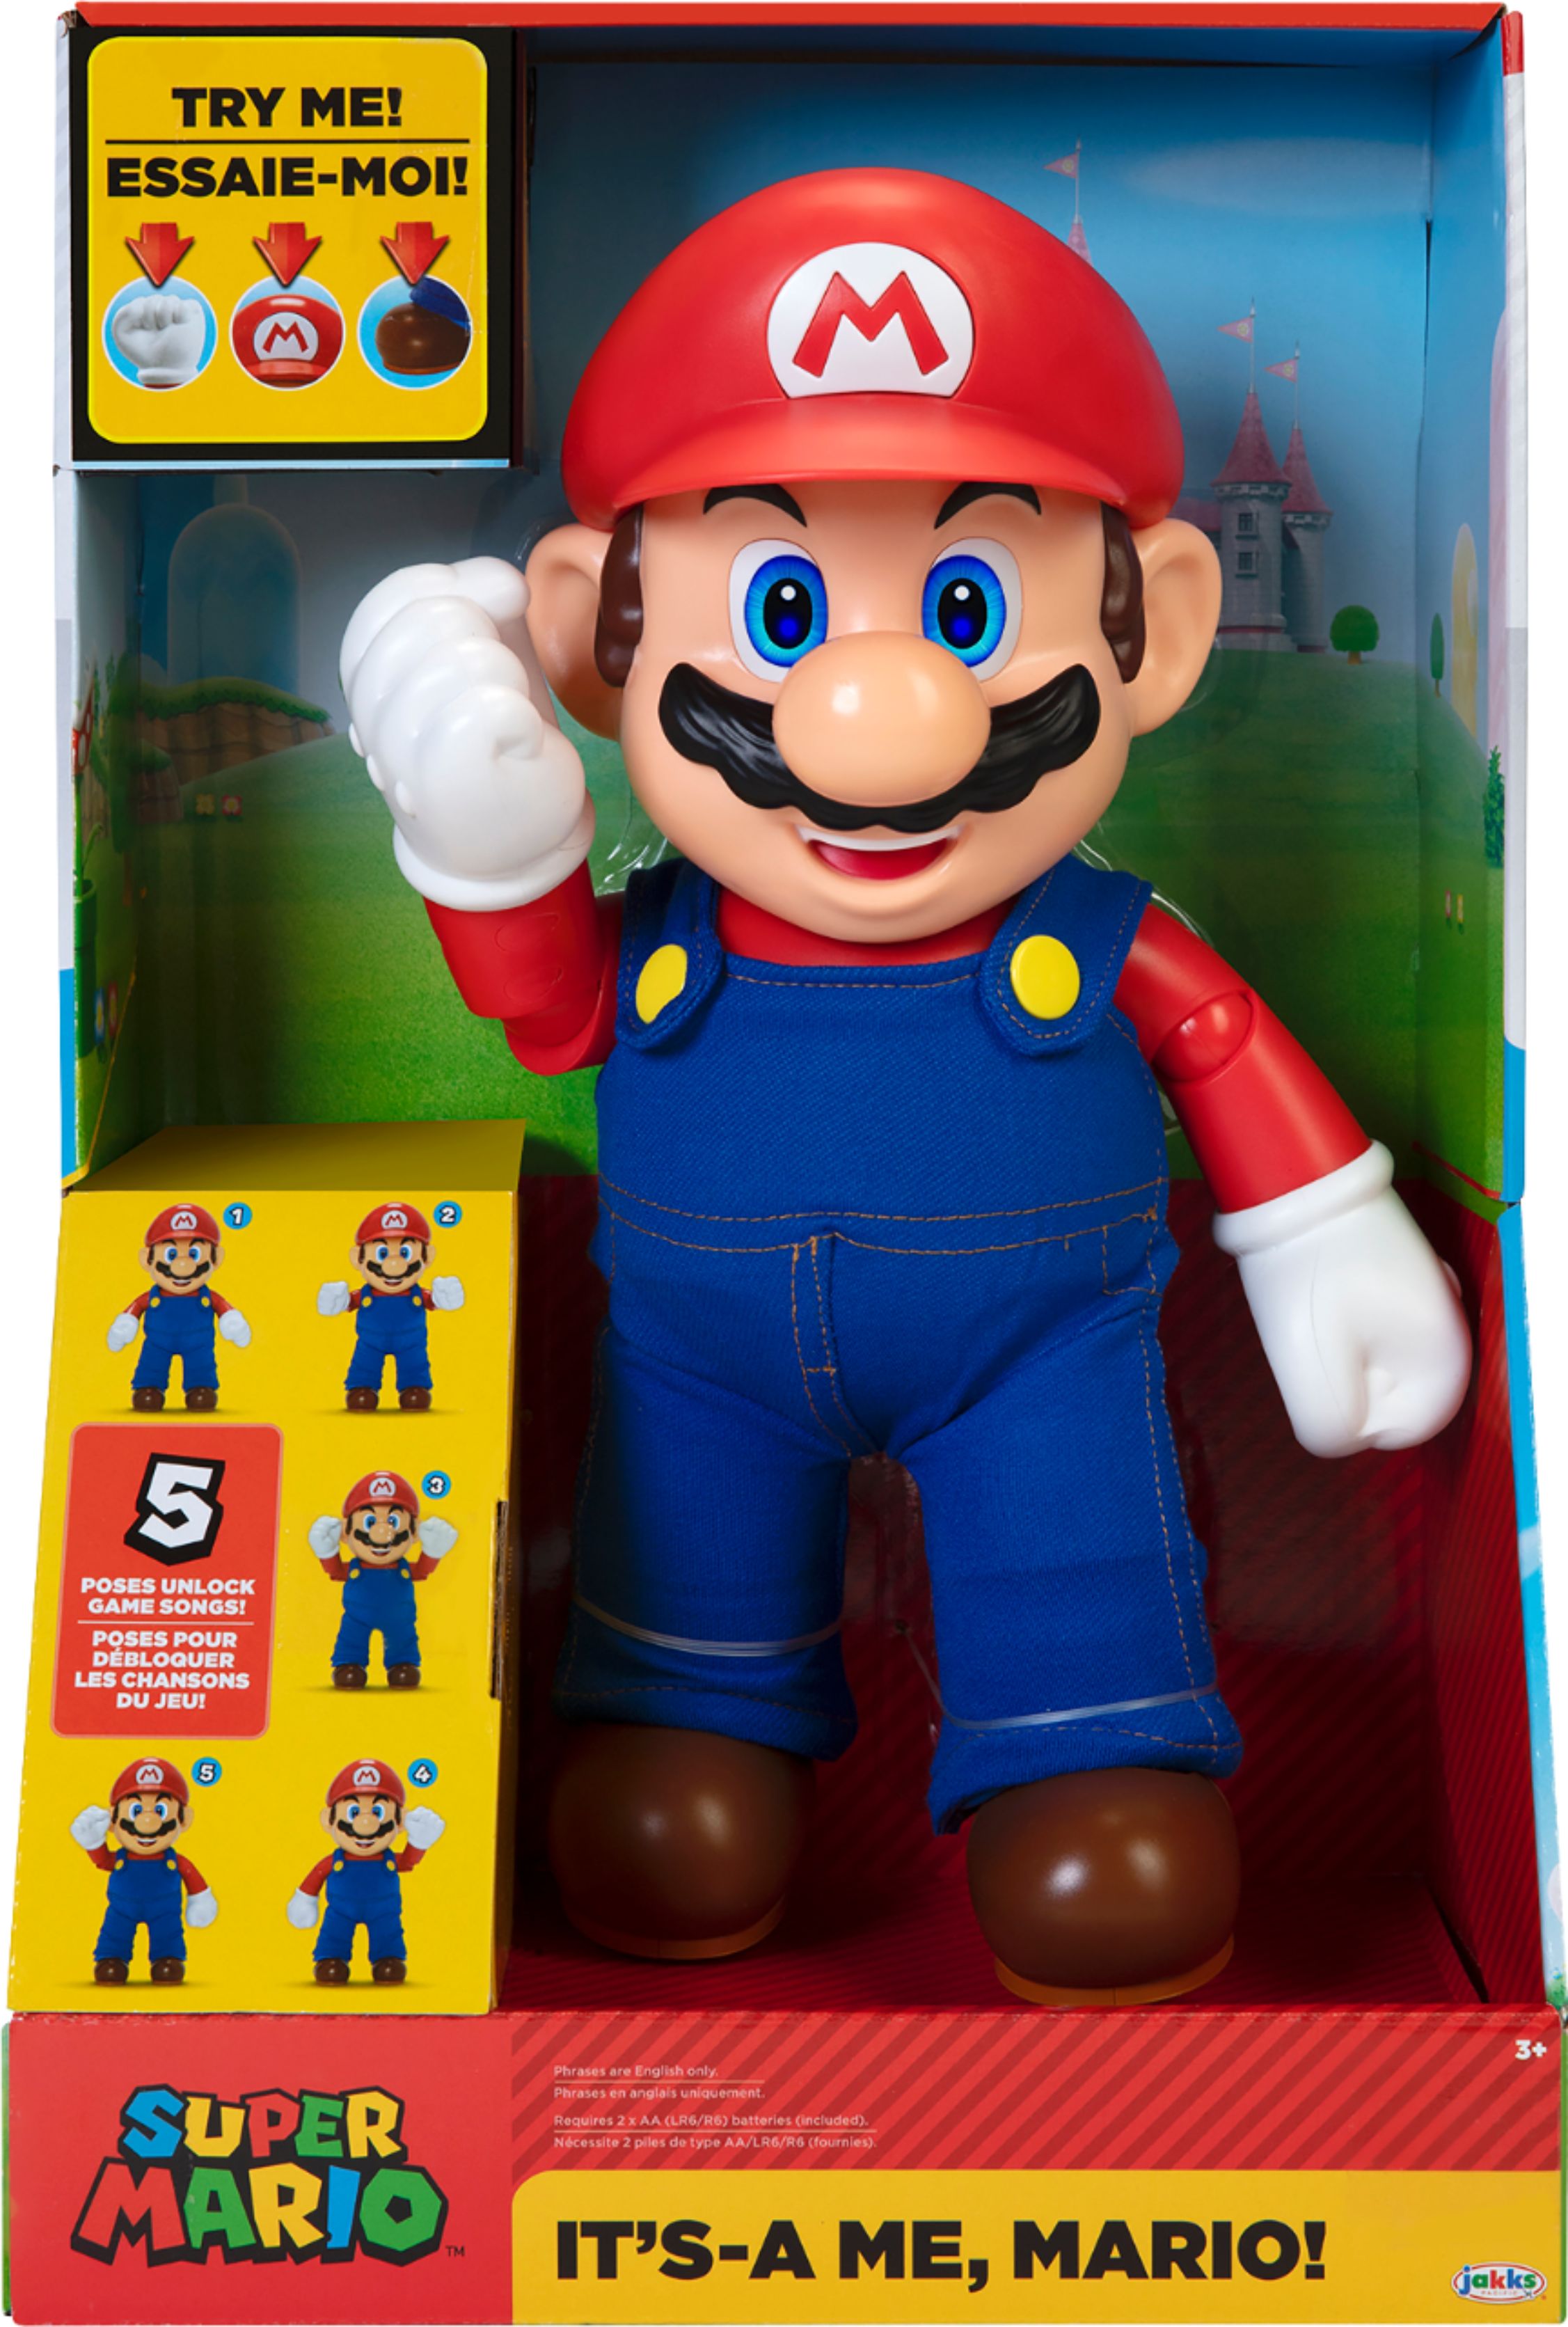 Mario super